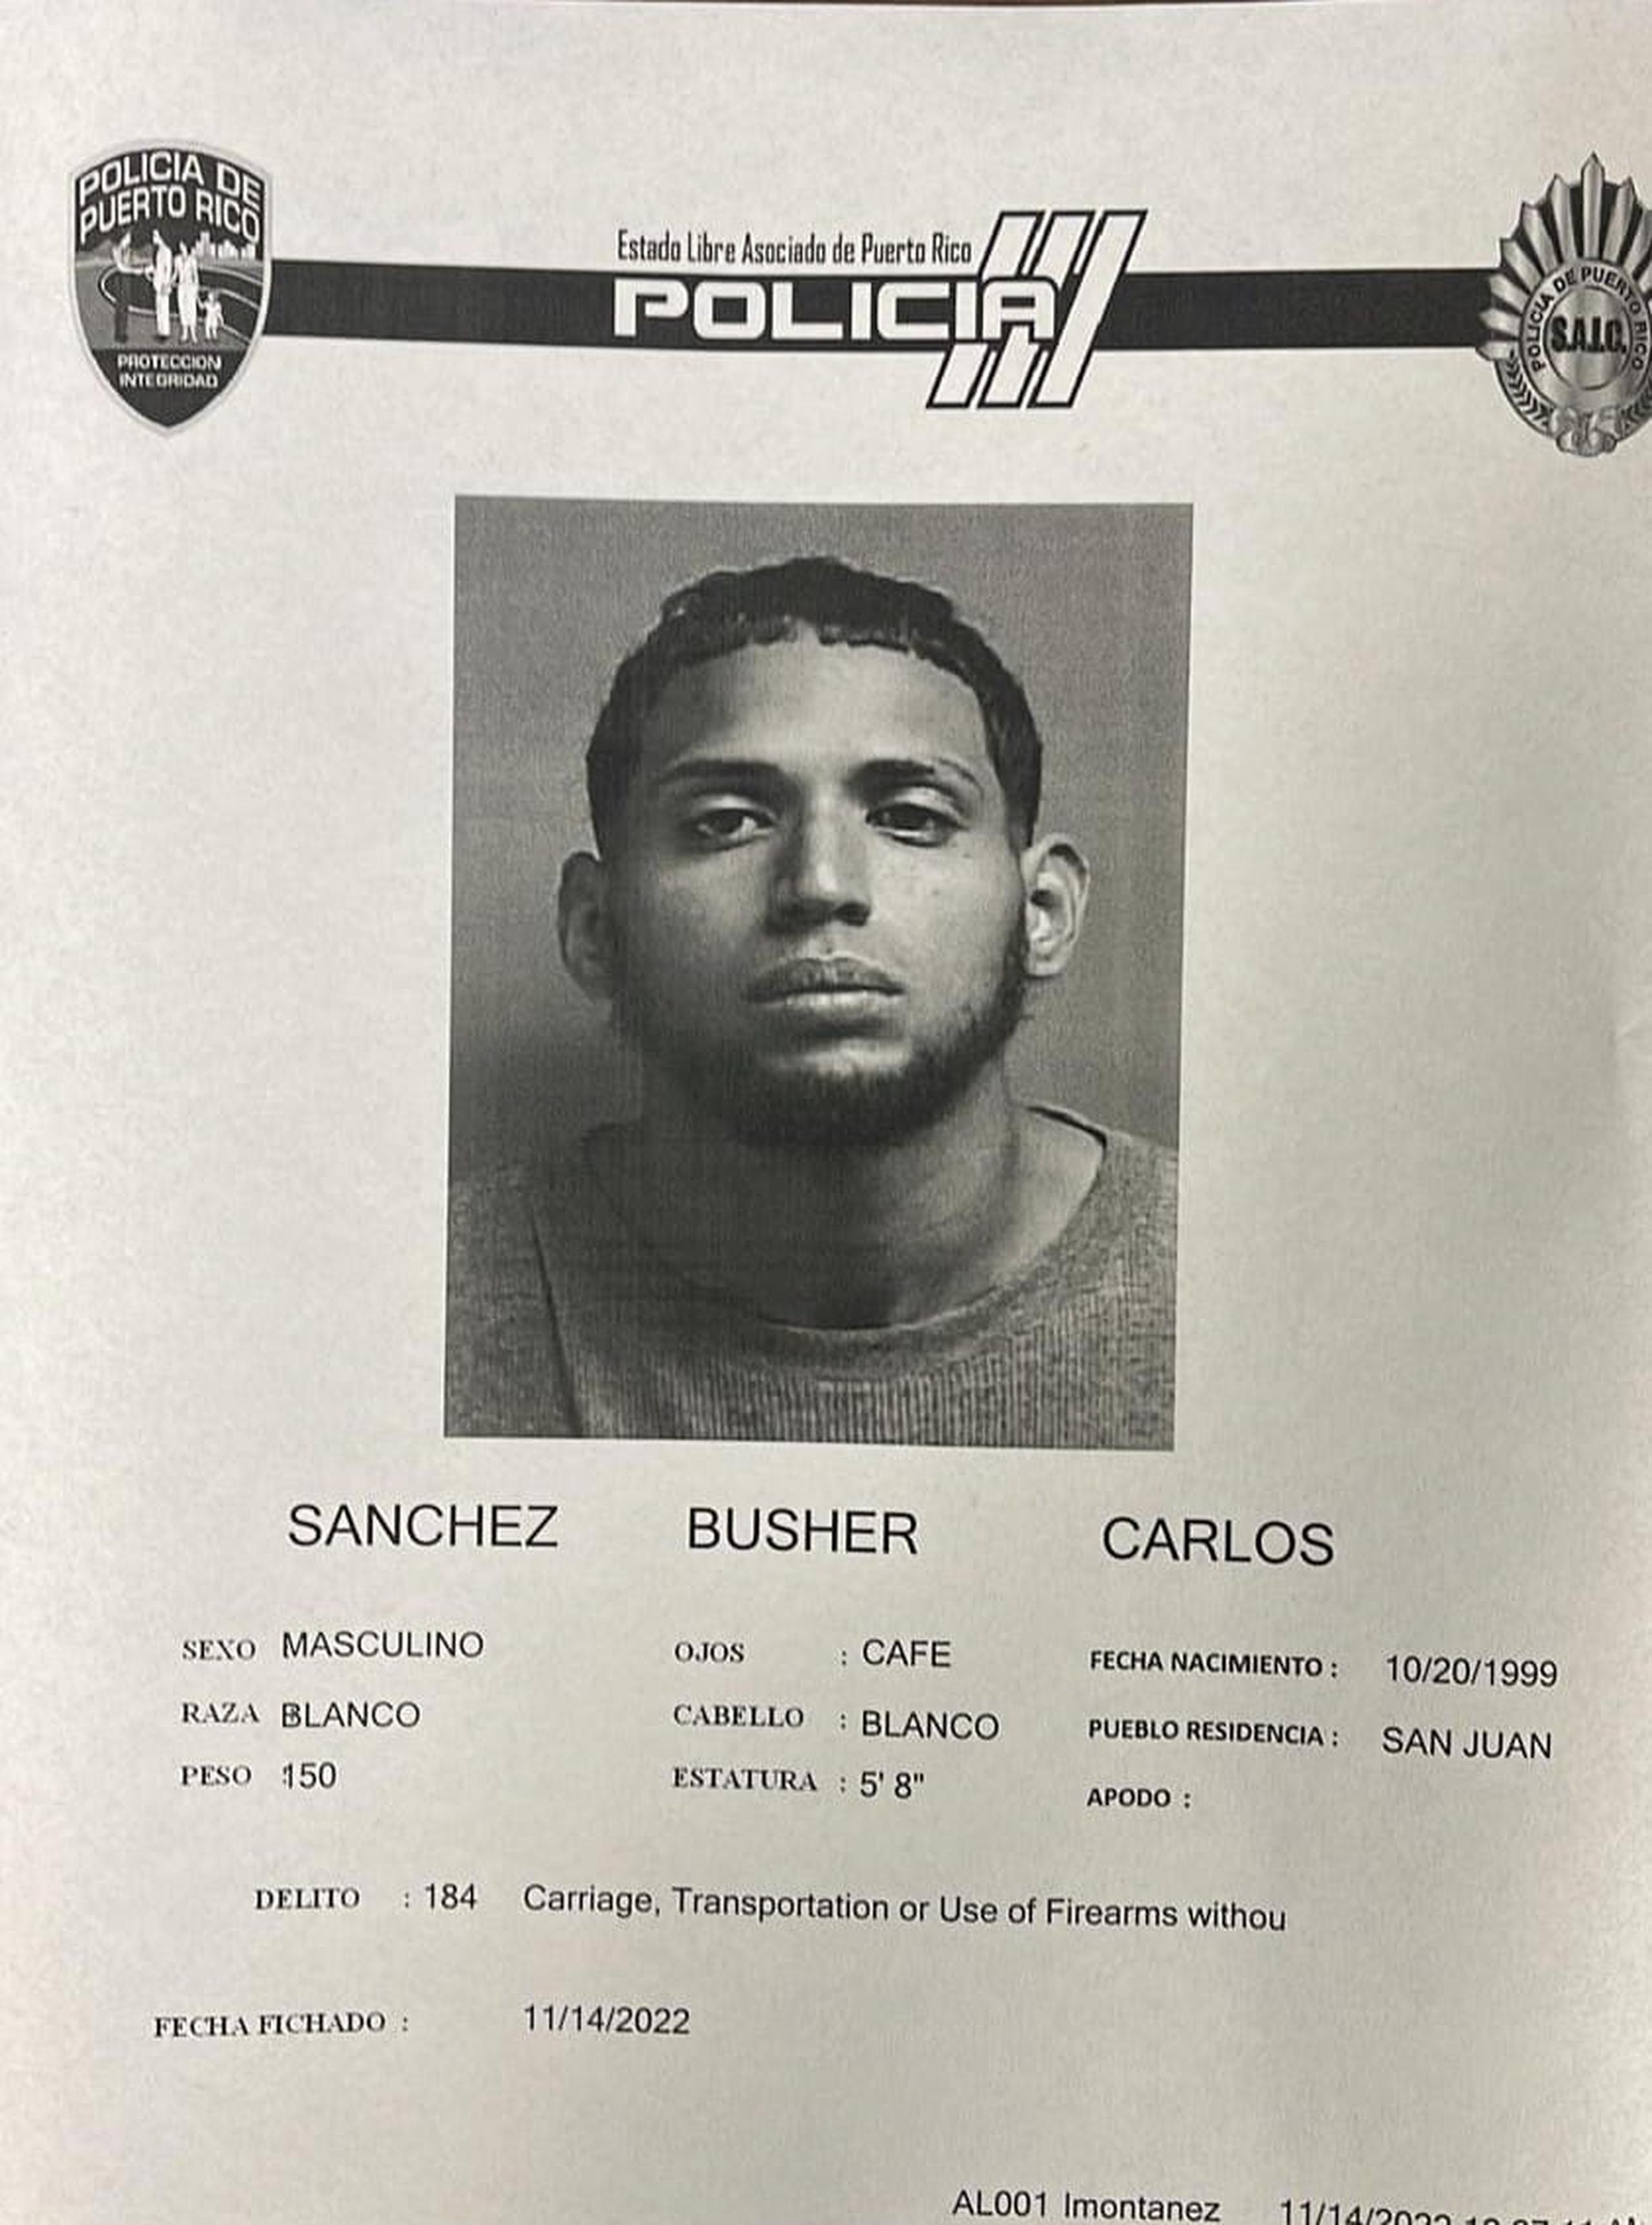 Carlos Sánchez Busher fue acusado junto a otro individuo por violación al artículo 6.05 de la Ley de Armas (Portación, Transportación o Uso de Armas de Fuego sin Licencia) y al artículo 190 del Código Penal (robo agravado).